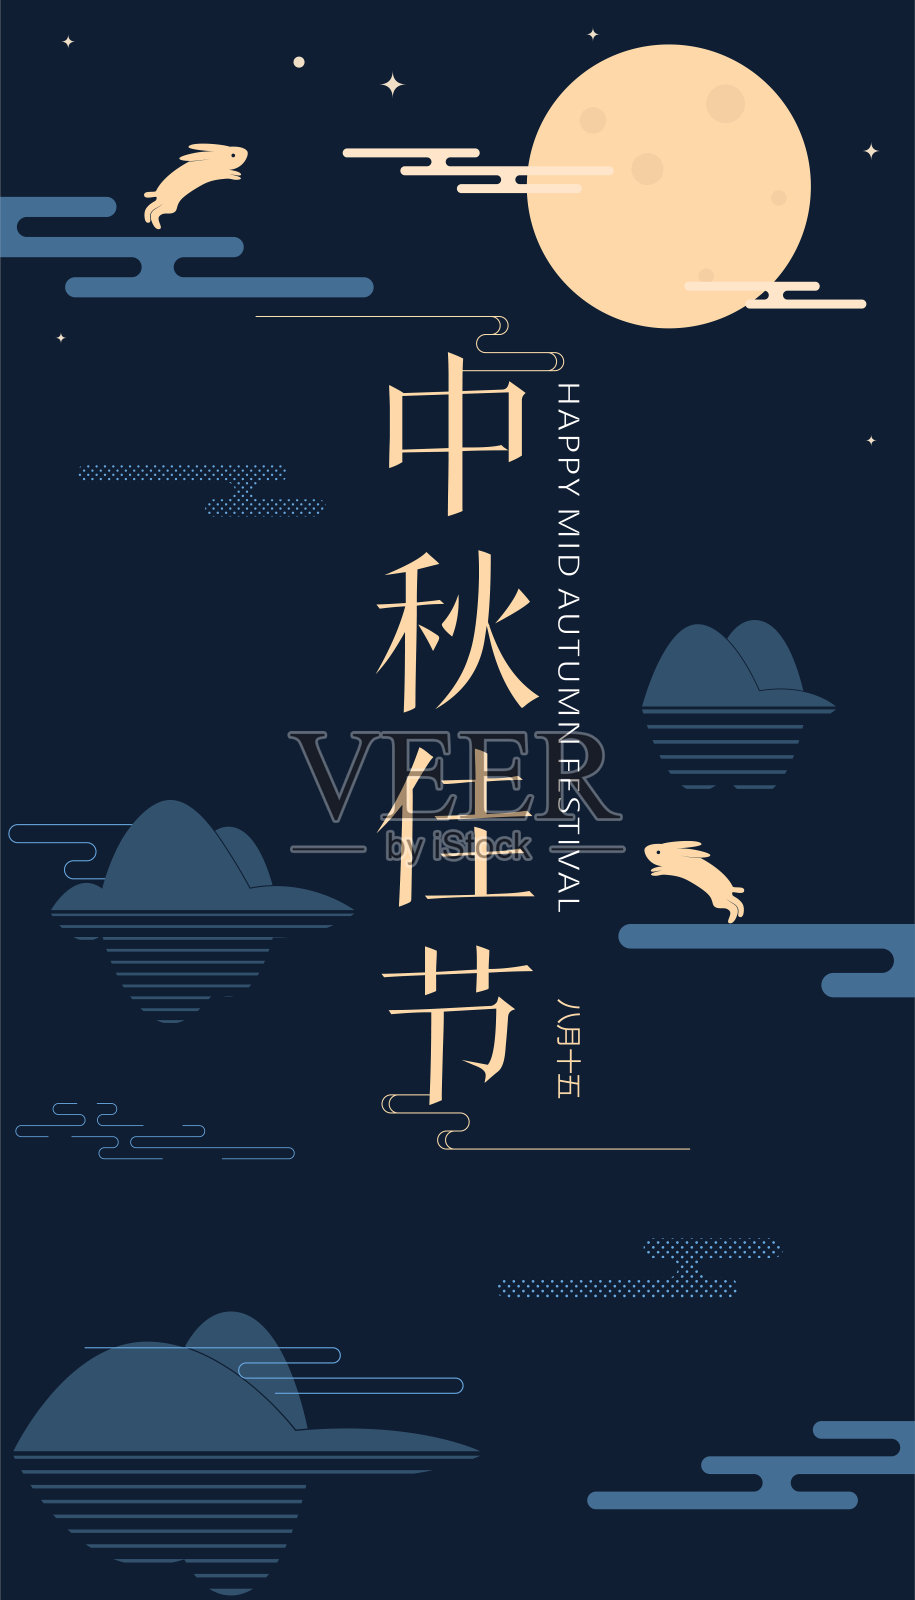 中国中秋节平面设计。汉字“中秋嘉节”-中秋节插图设计模板素材